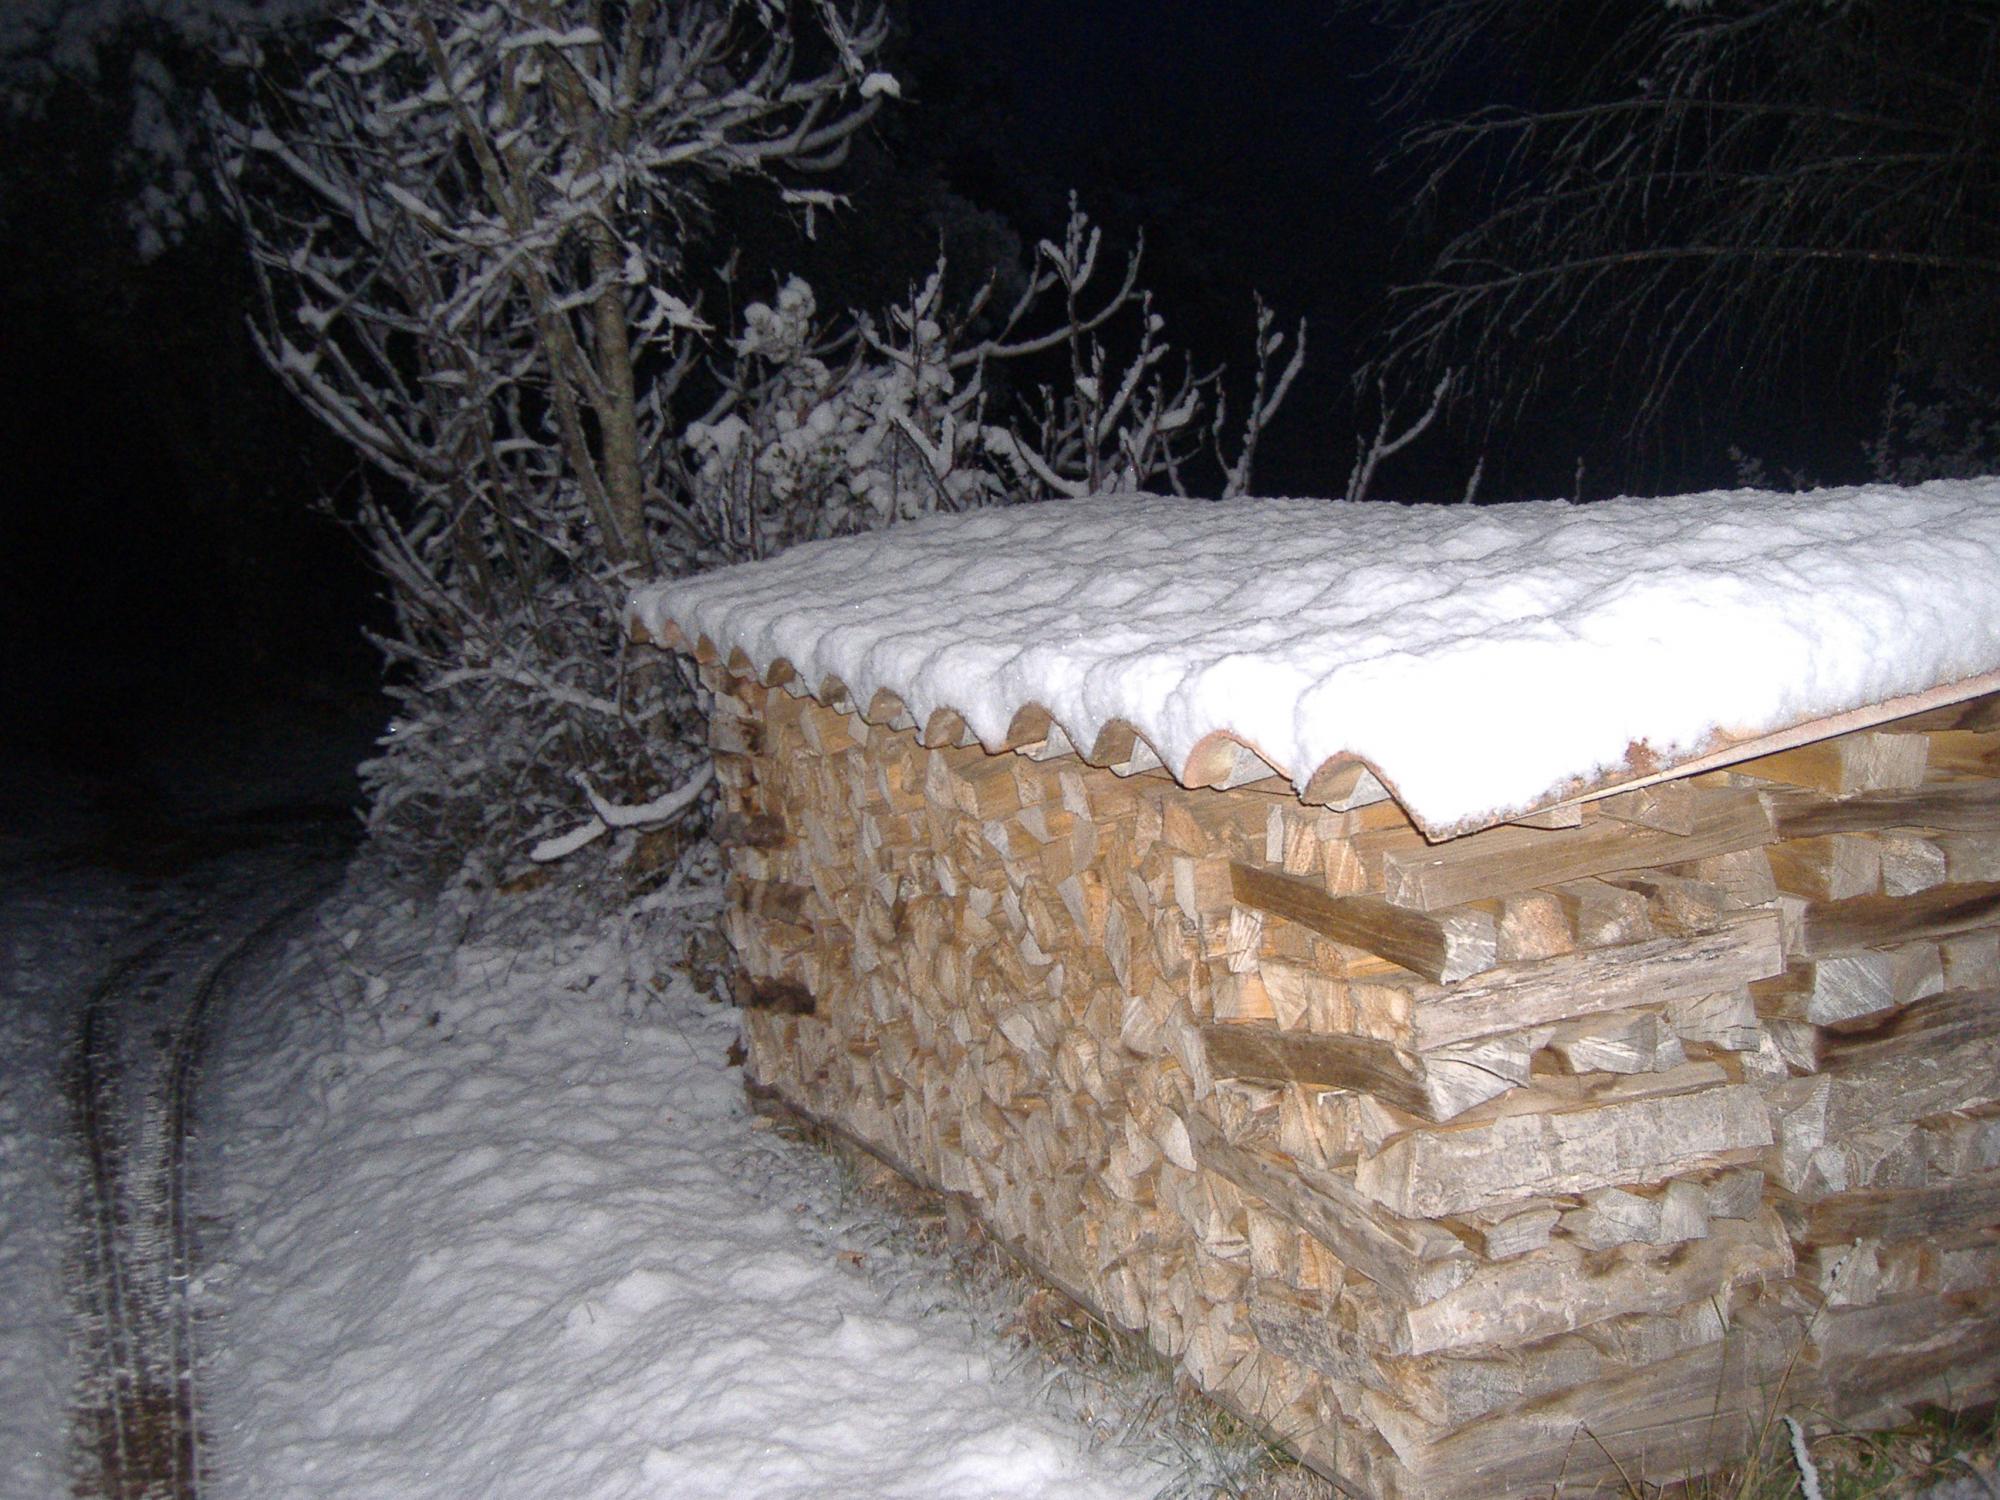 récolter du bois de chauffage pour l'hiver. un chariot vide se